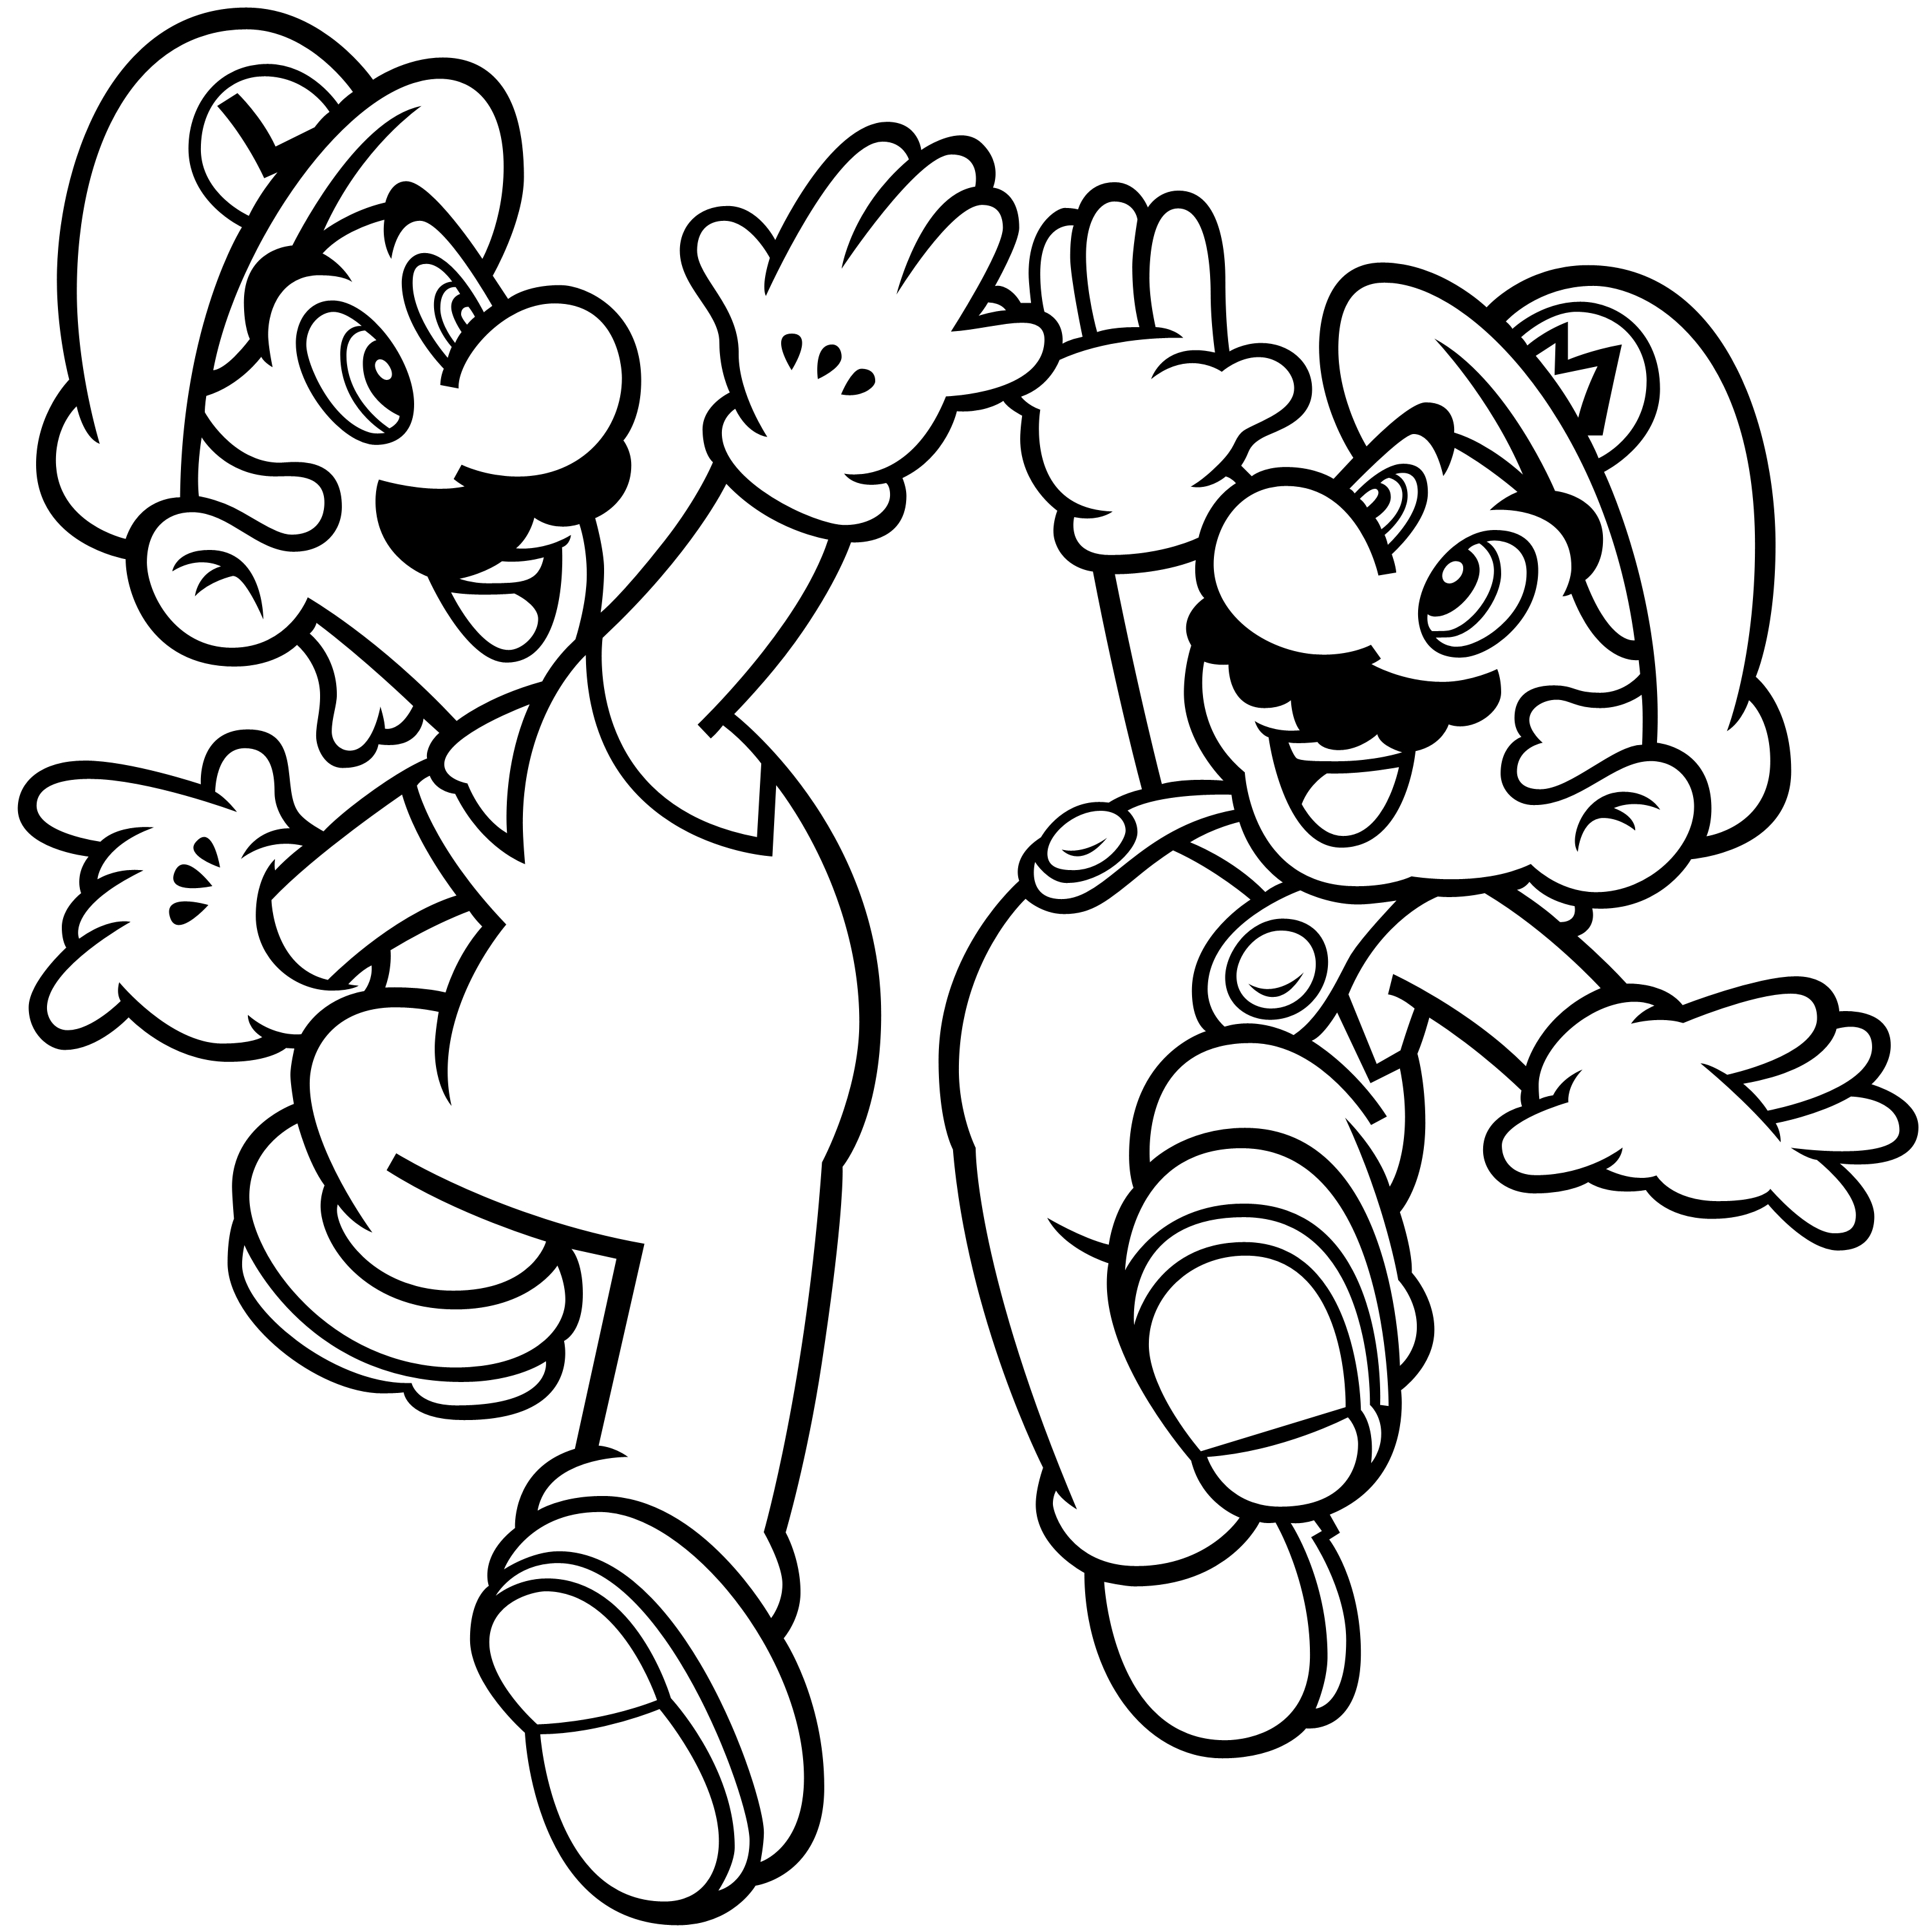 Mario And Luigi Easy Mario Coloring Page - Coloring Pages